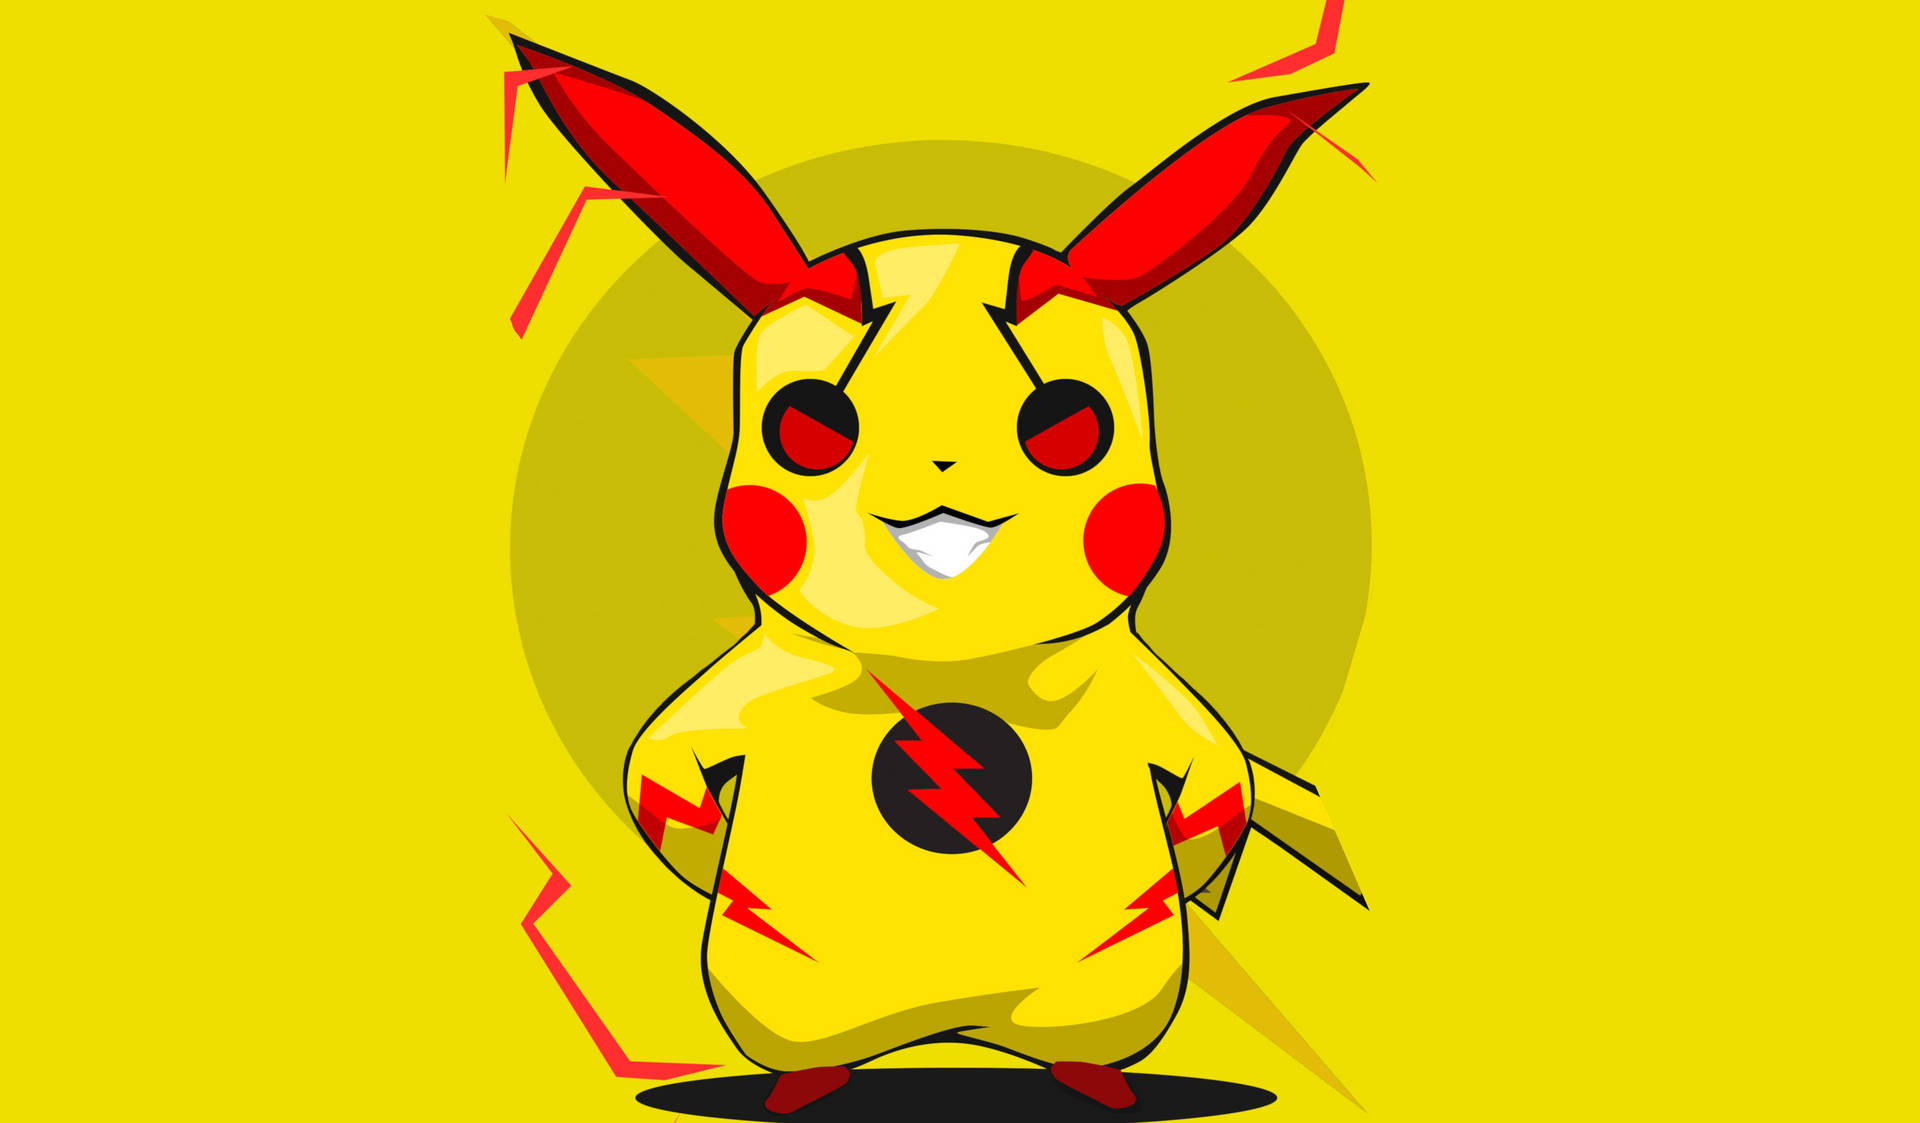 Red Ear Pikachu 4k Wallpaper